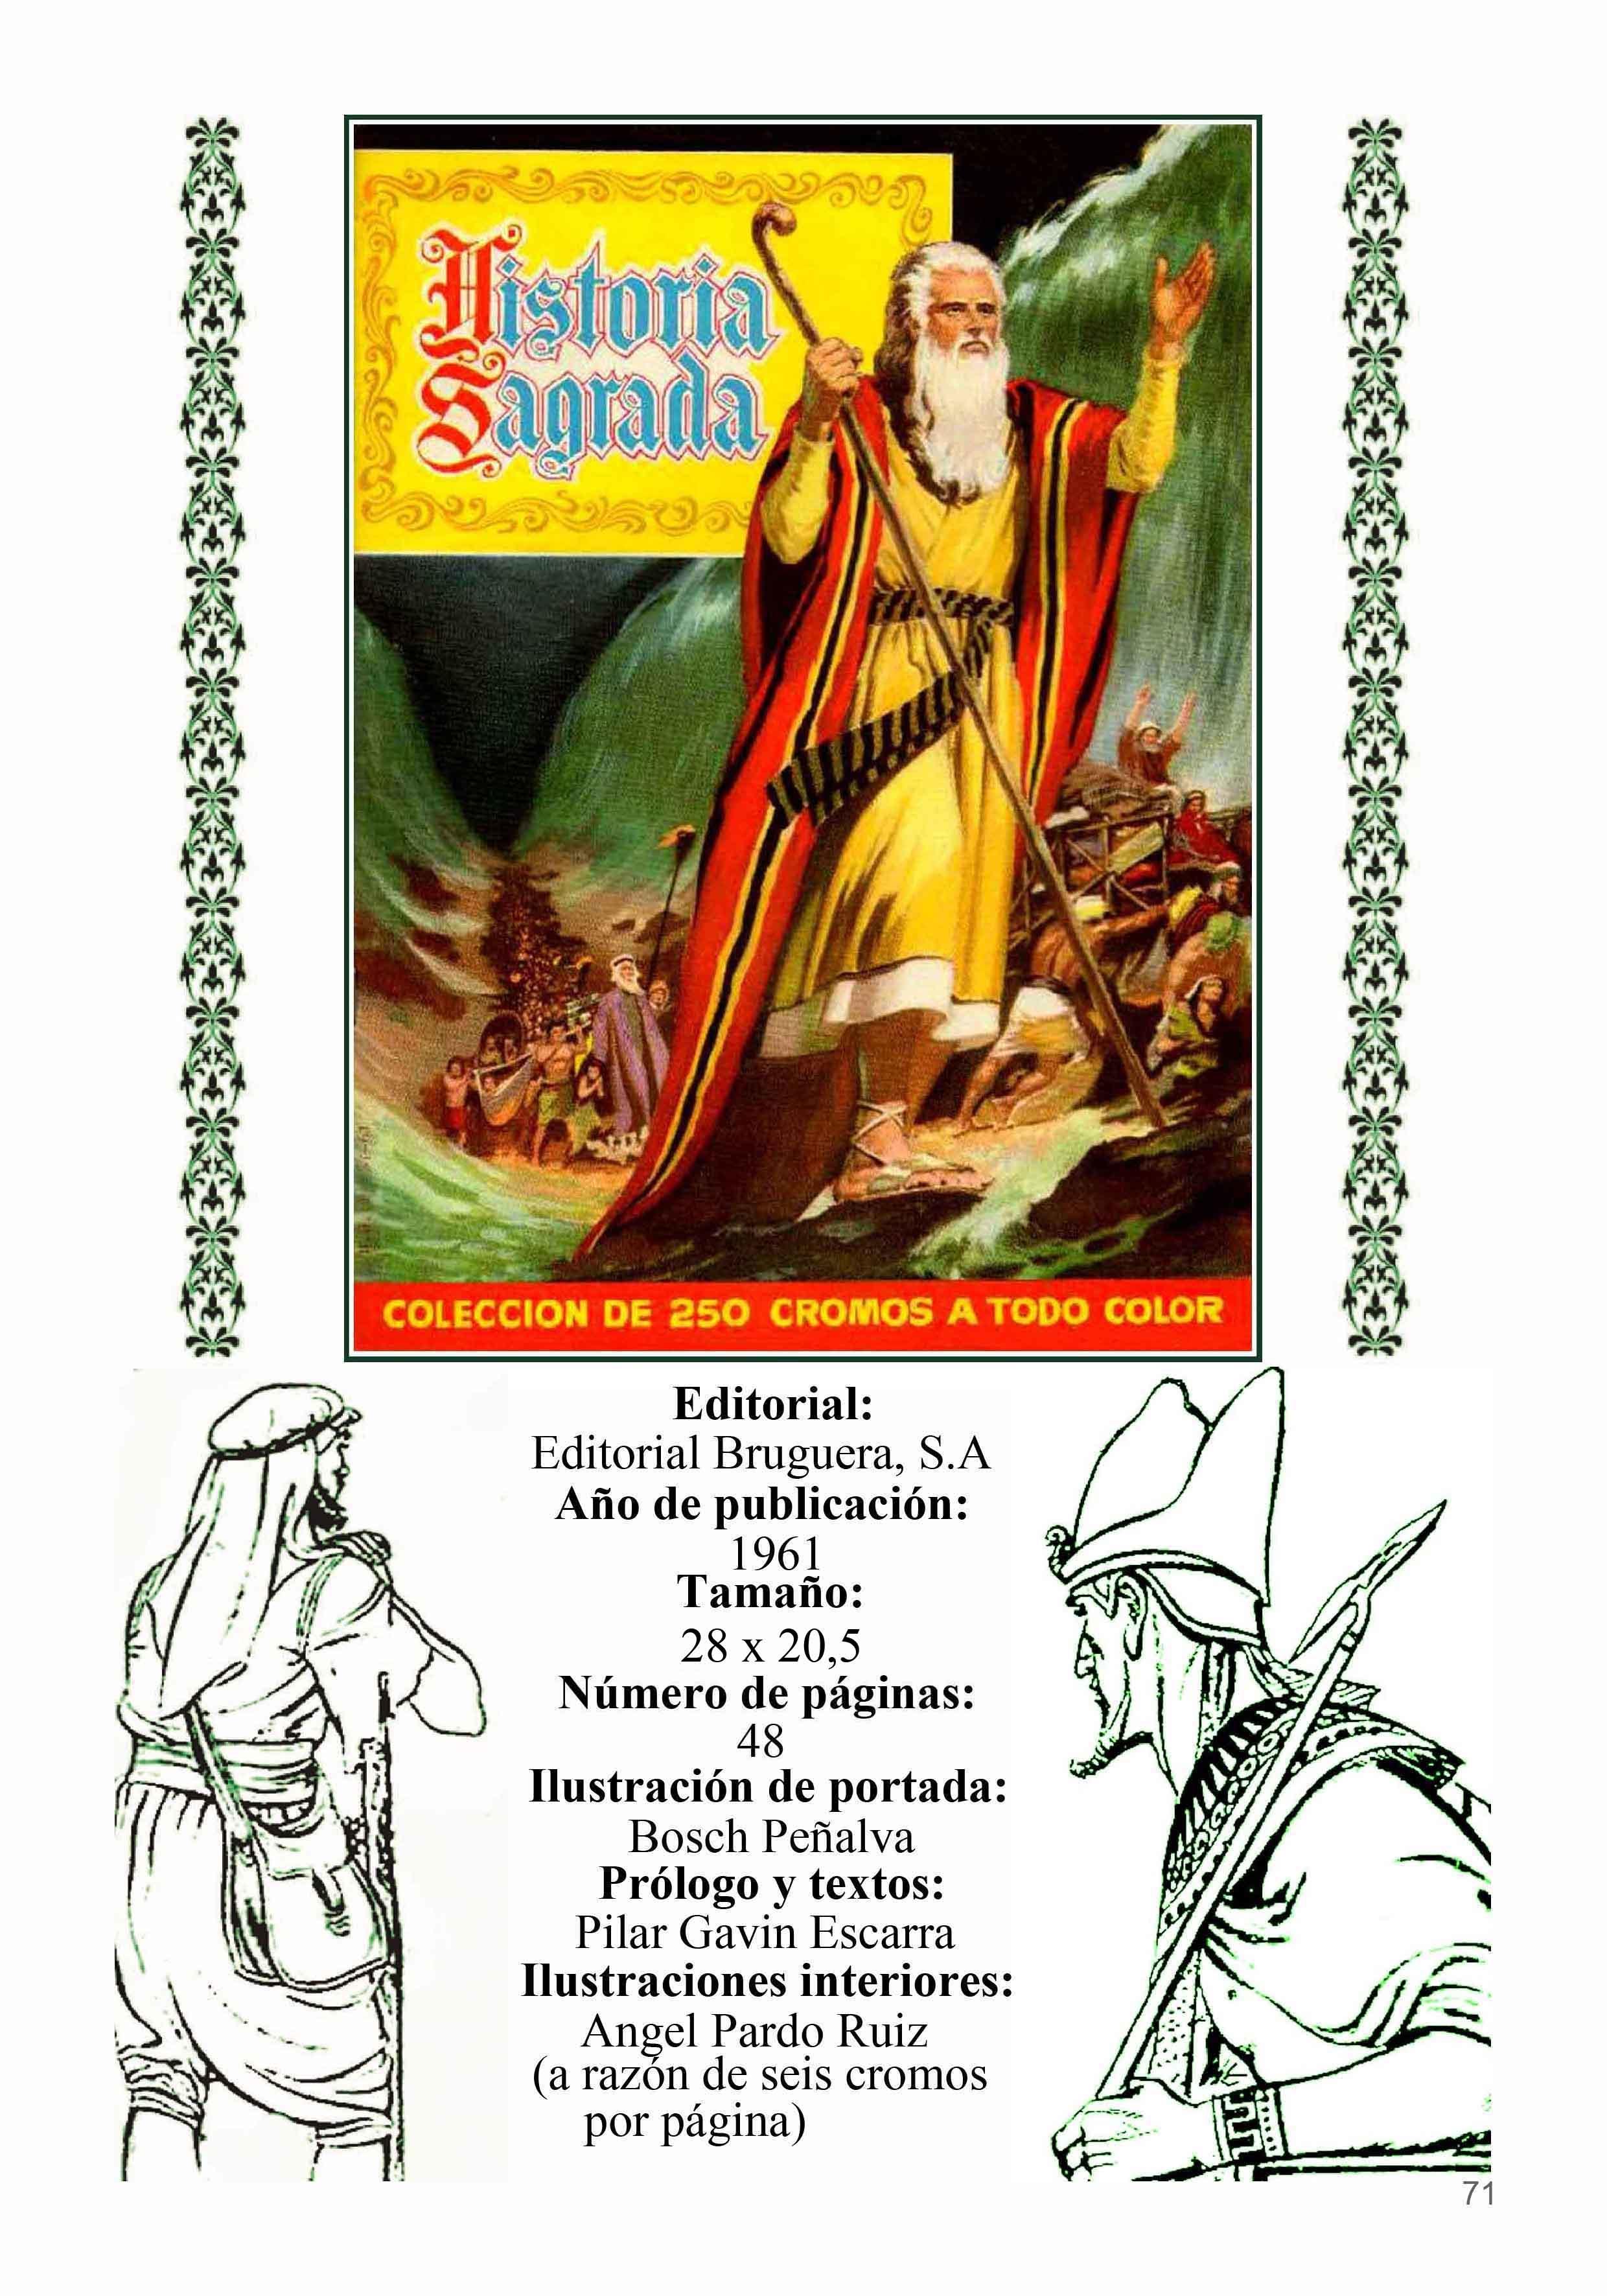 Los Archivos de El Boletin: Los Relatos Cortos de Angel Pardo numero 07: Historia Sagrada